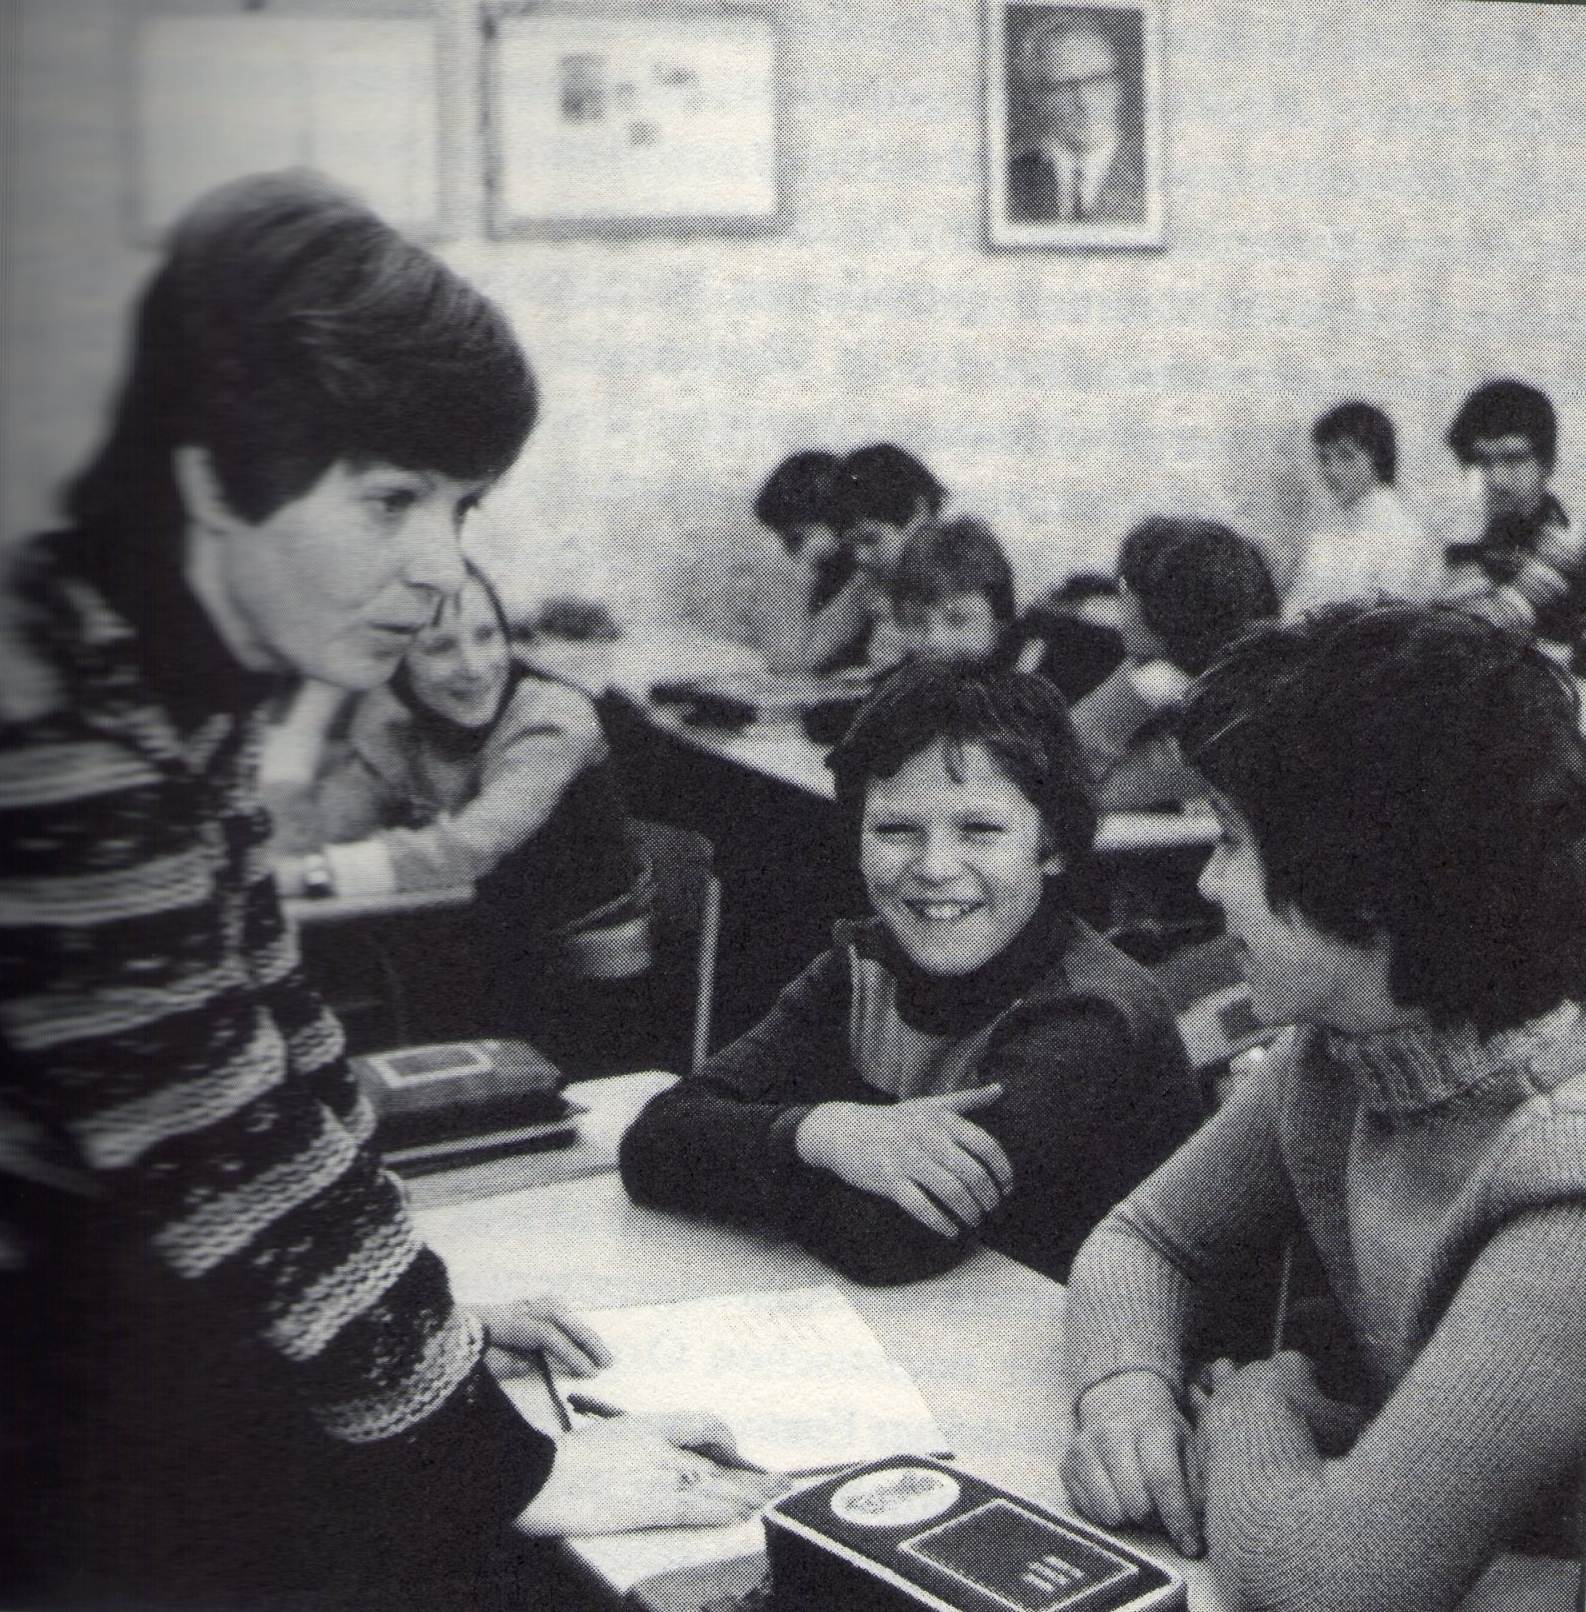 Unterricht an der 5. POS "Werner Seelenbinder" in Suhl, 1981